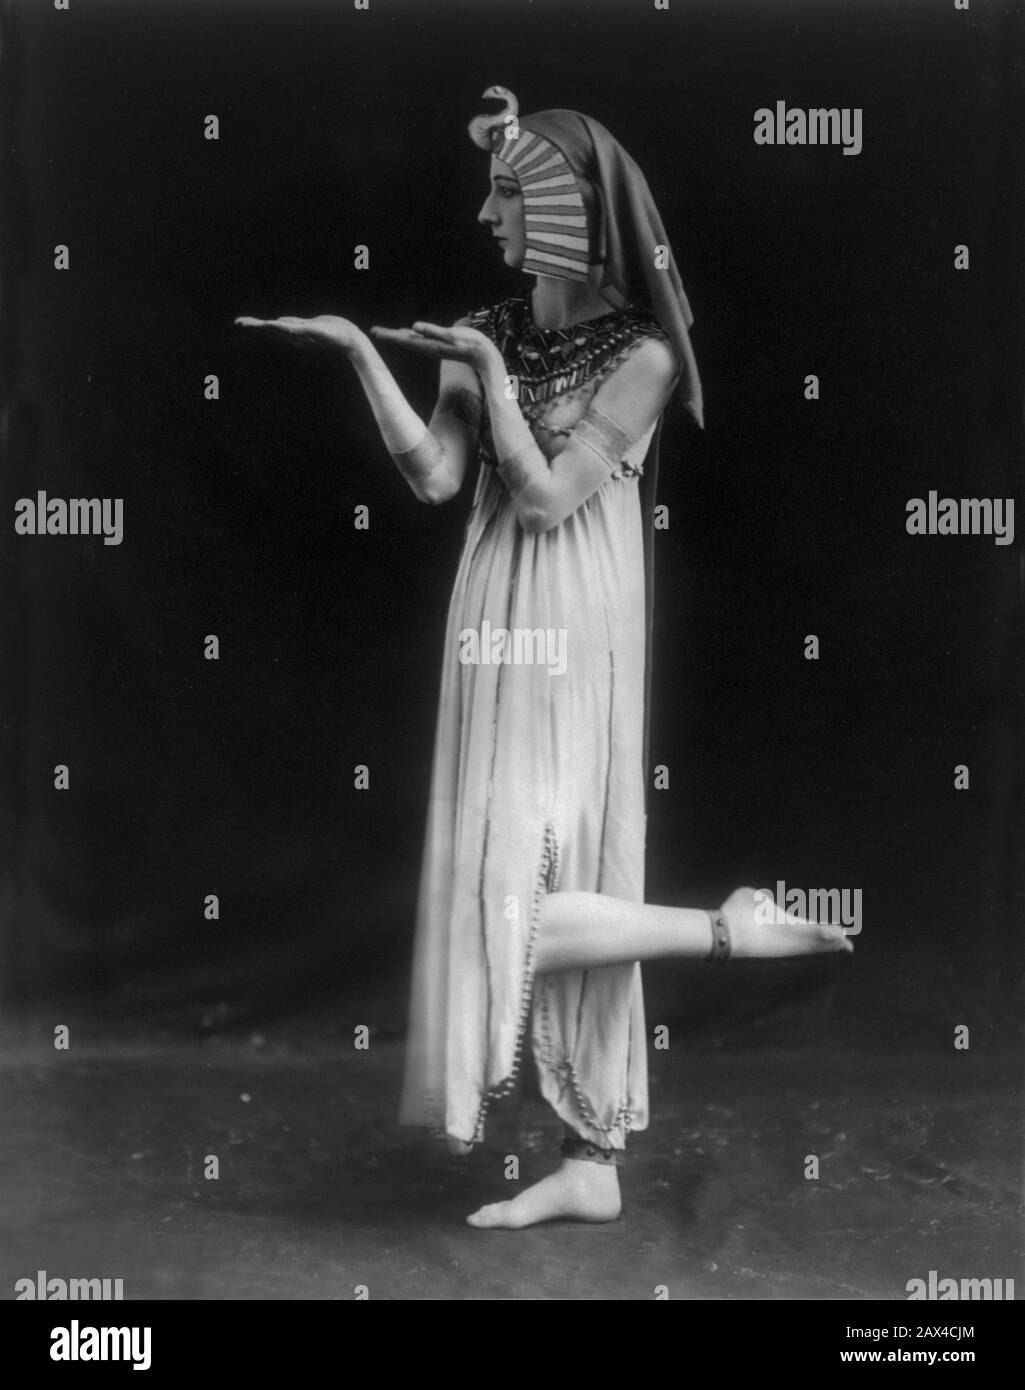 1915 , New York , USA : The russian ballerina DESIREE LUBOWSKA  as CLEOPATRA   - DANCER - BALLETTO - BALLET -   DANCE - DANZA - COREOGRAFO - COREOGRAPHY - COREOGRAFIA -  ballerina  - EURYTHMIC DANCE - avantgarde - DANZA - CINEMA - BALLETTO - TEATRO  - woman DANCER  - AVANGUARDIA  - THEATER - THEATRE - moderno - MODERNISM - THEATRE - THEATER - TEATRO  - scene costume - costume di scena - orientalismo - costume egizio - Ancient Egypt - piedi nudi - barefoot - profilo - profile - hands - mani - Lubouska - LUBOVSKA  ----  ARCHIVIO GBB Stock Photo